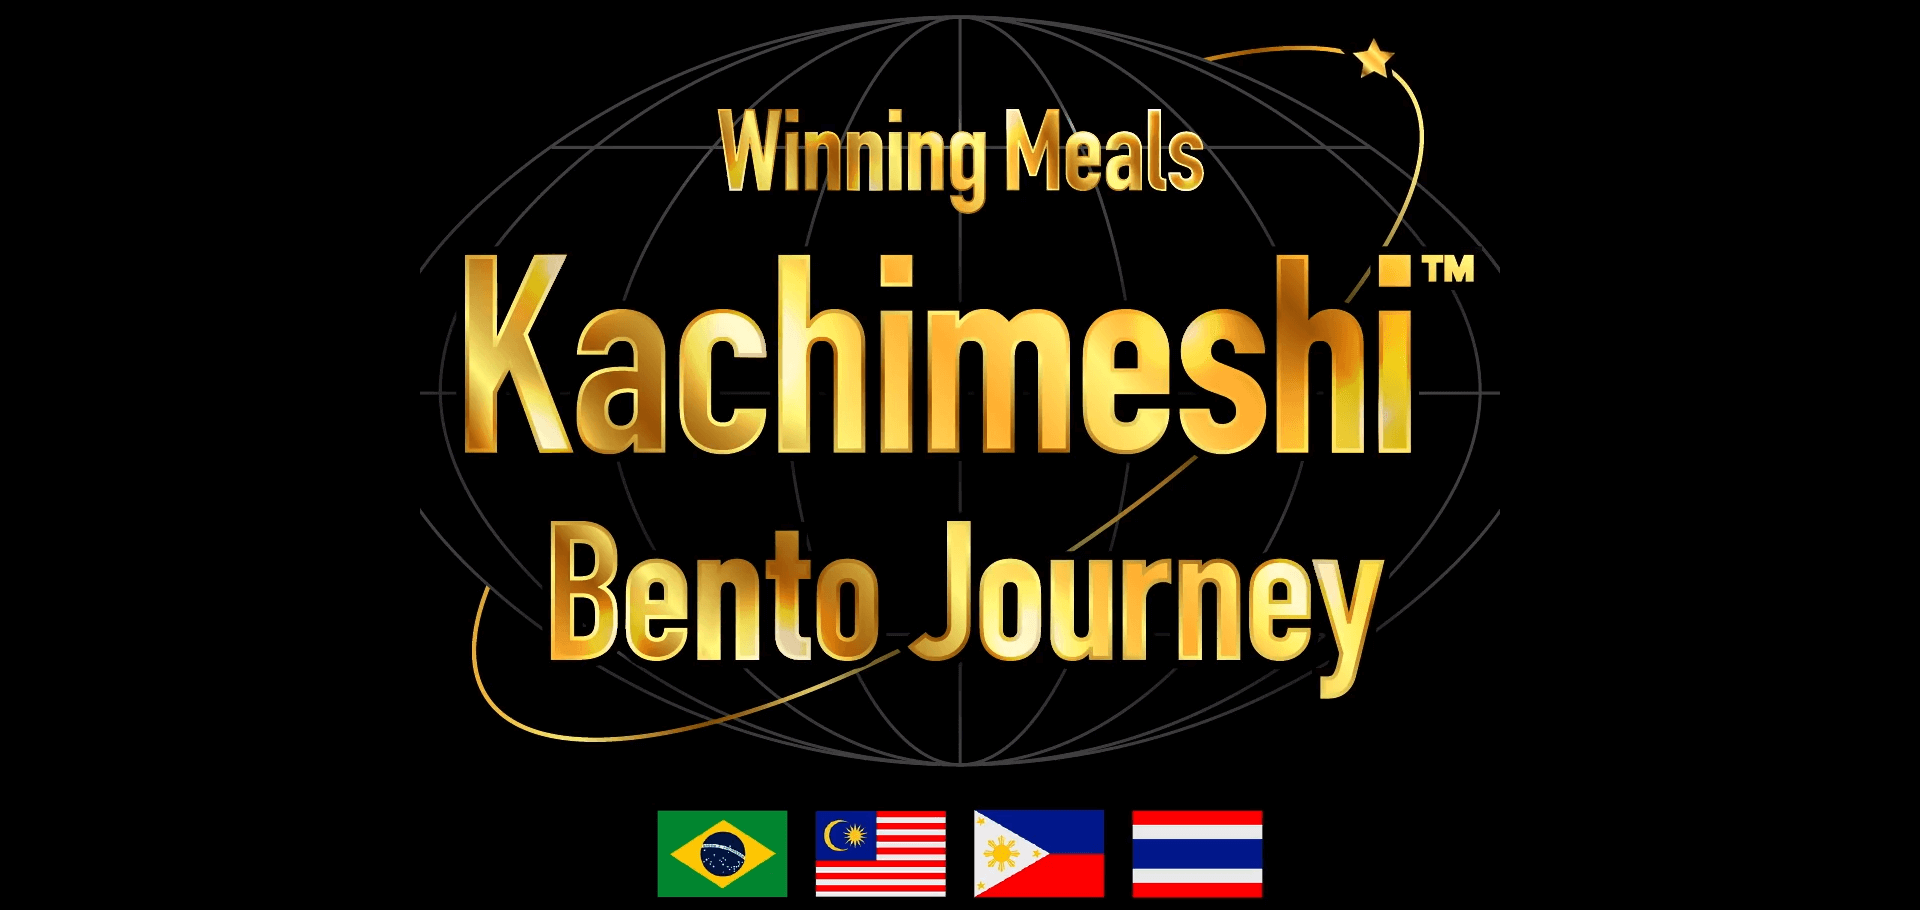 Bữa ăn thắng lợi Hành trình Kachimeshi Bento